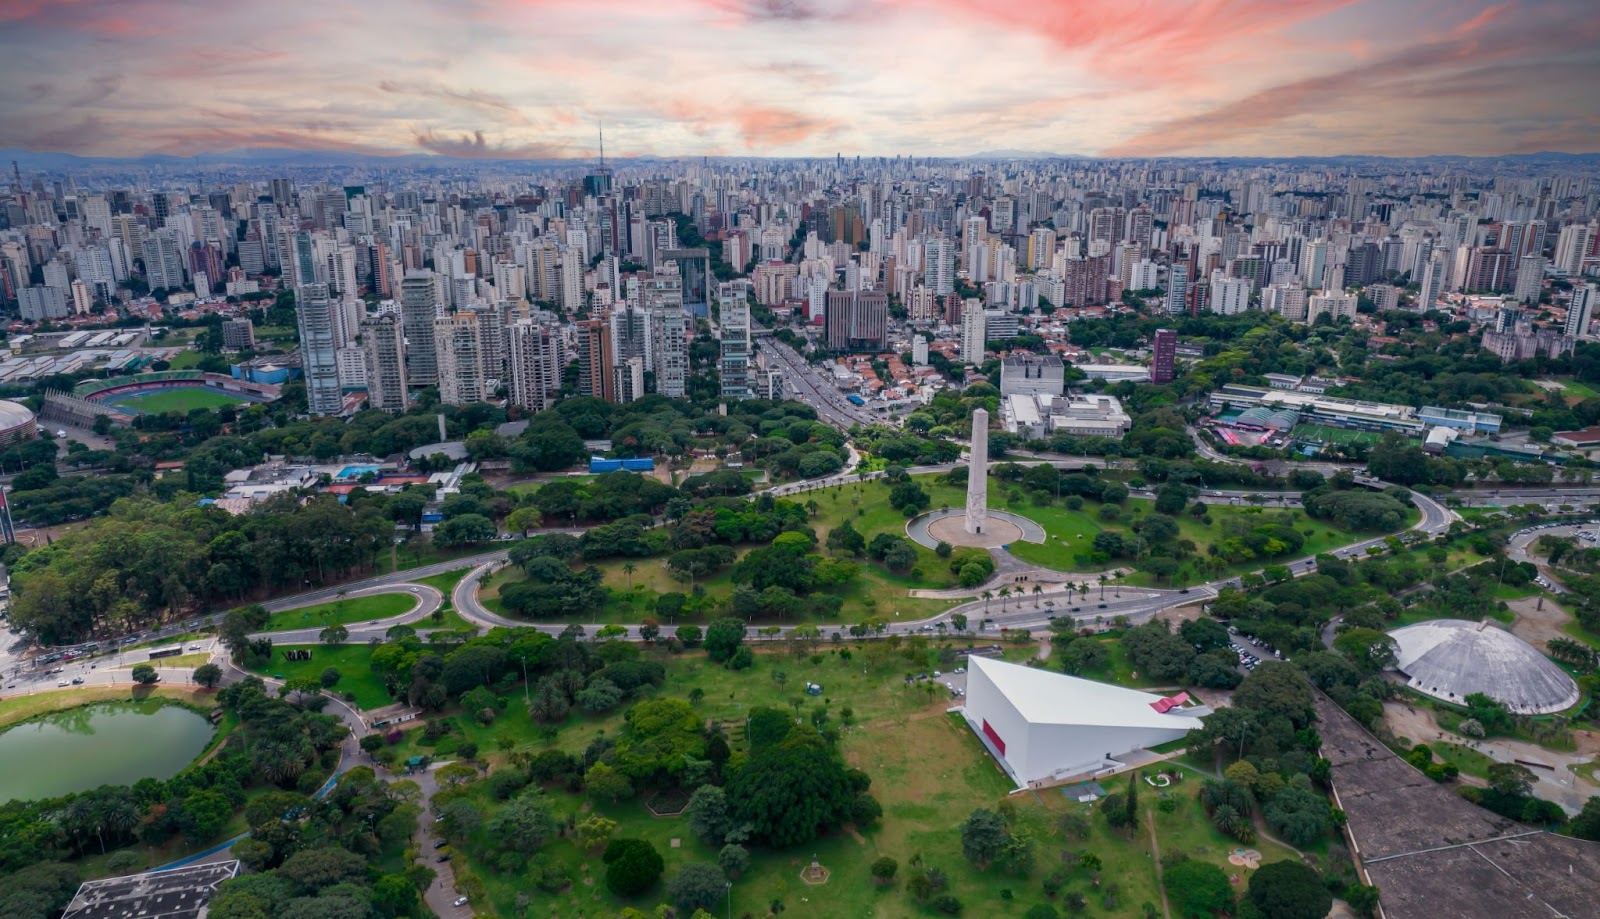 Imagem aérea do Parque Ibirapuera. Vasta área verde com lago, árvores e gramado. Ao horizonte, diversos prédios de diferentes tamanhos.